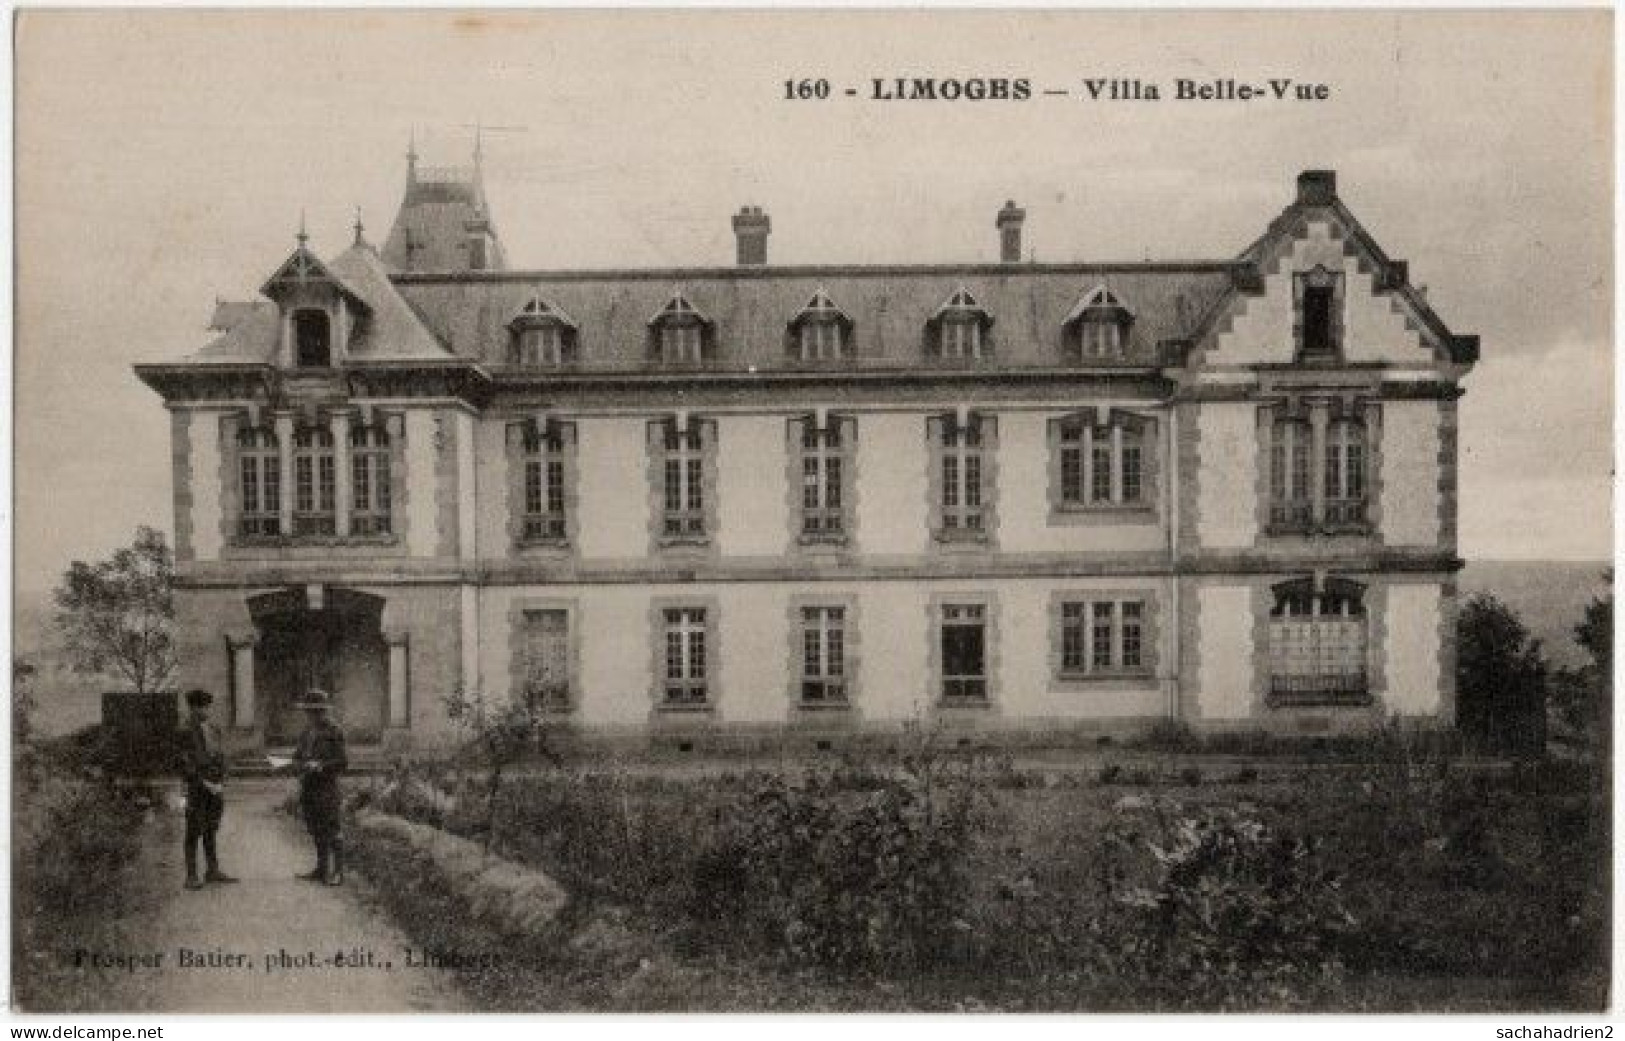 87. LIMOGES. Villa Belle-Vue. 160 (1) - Limoges